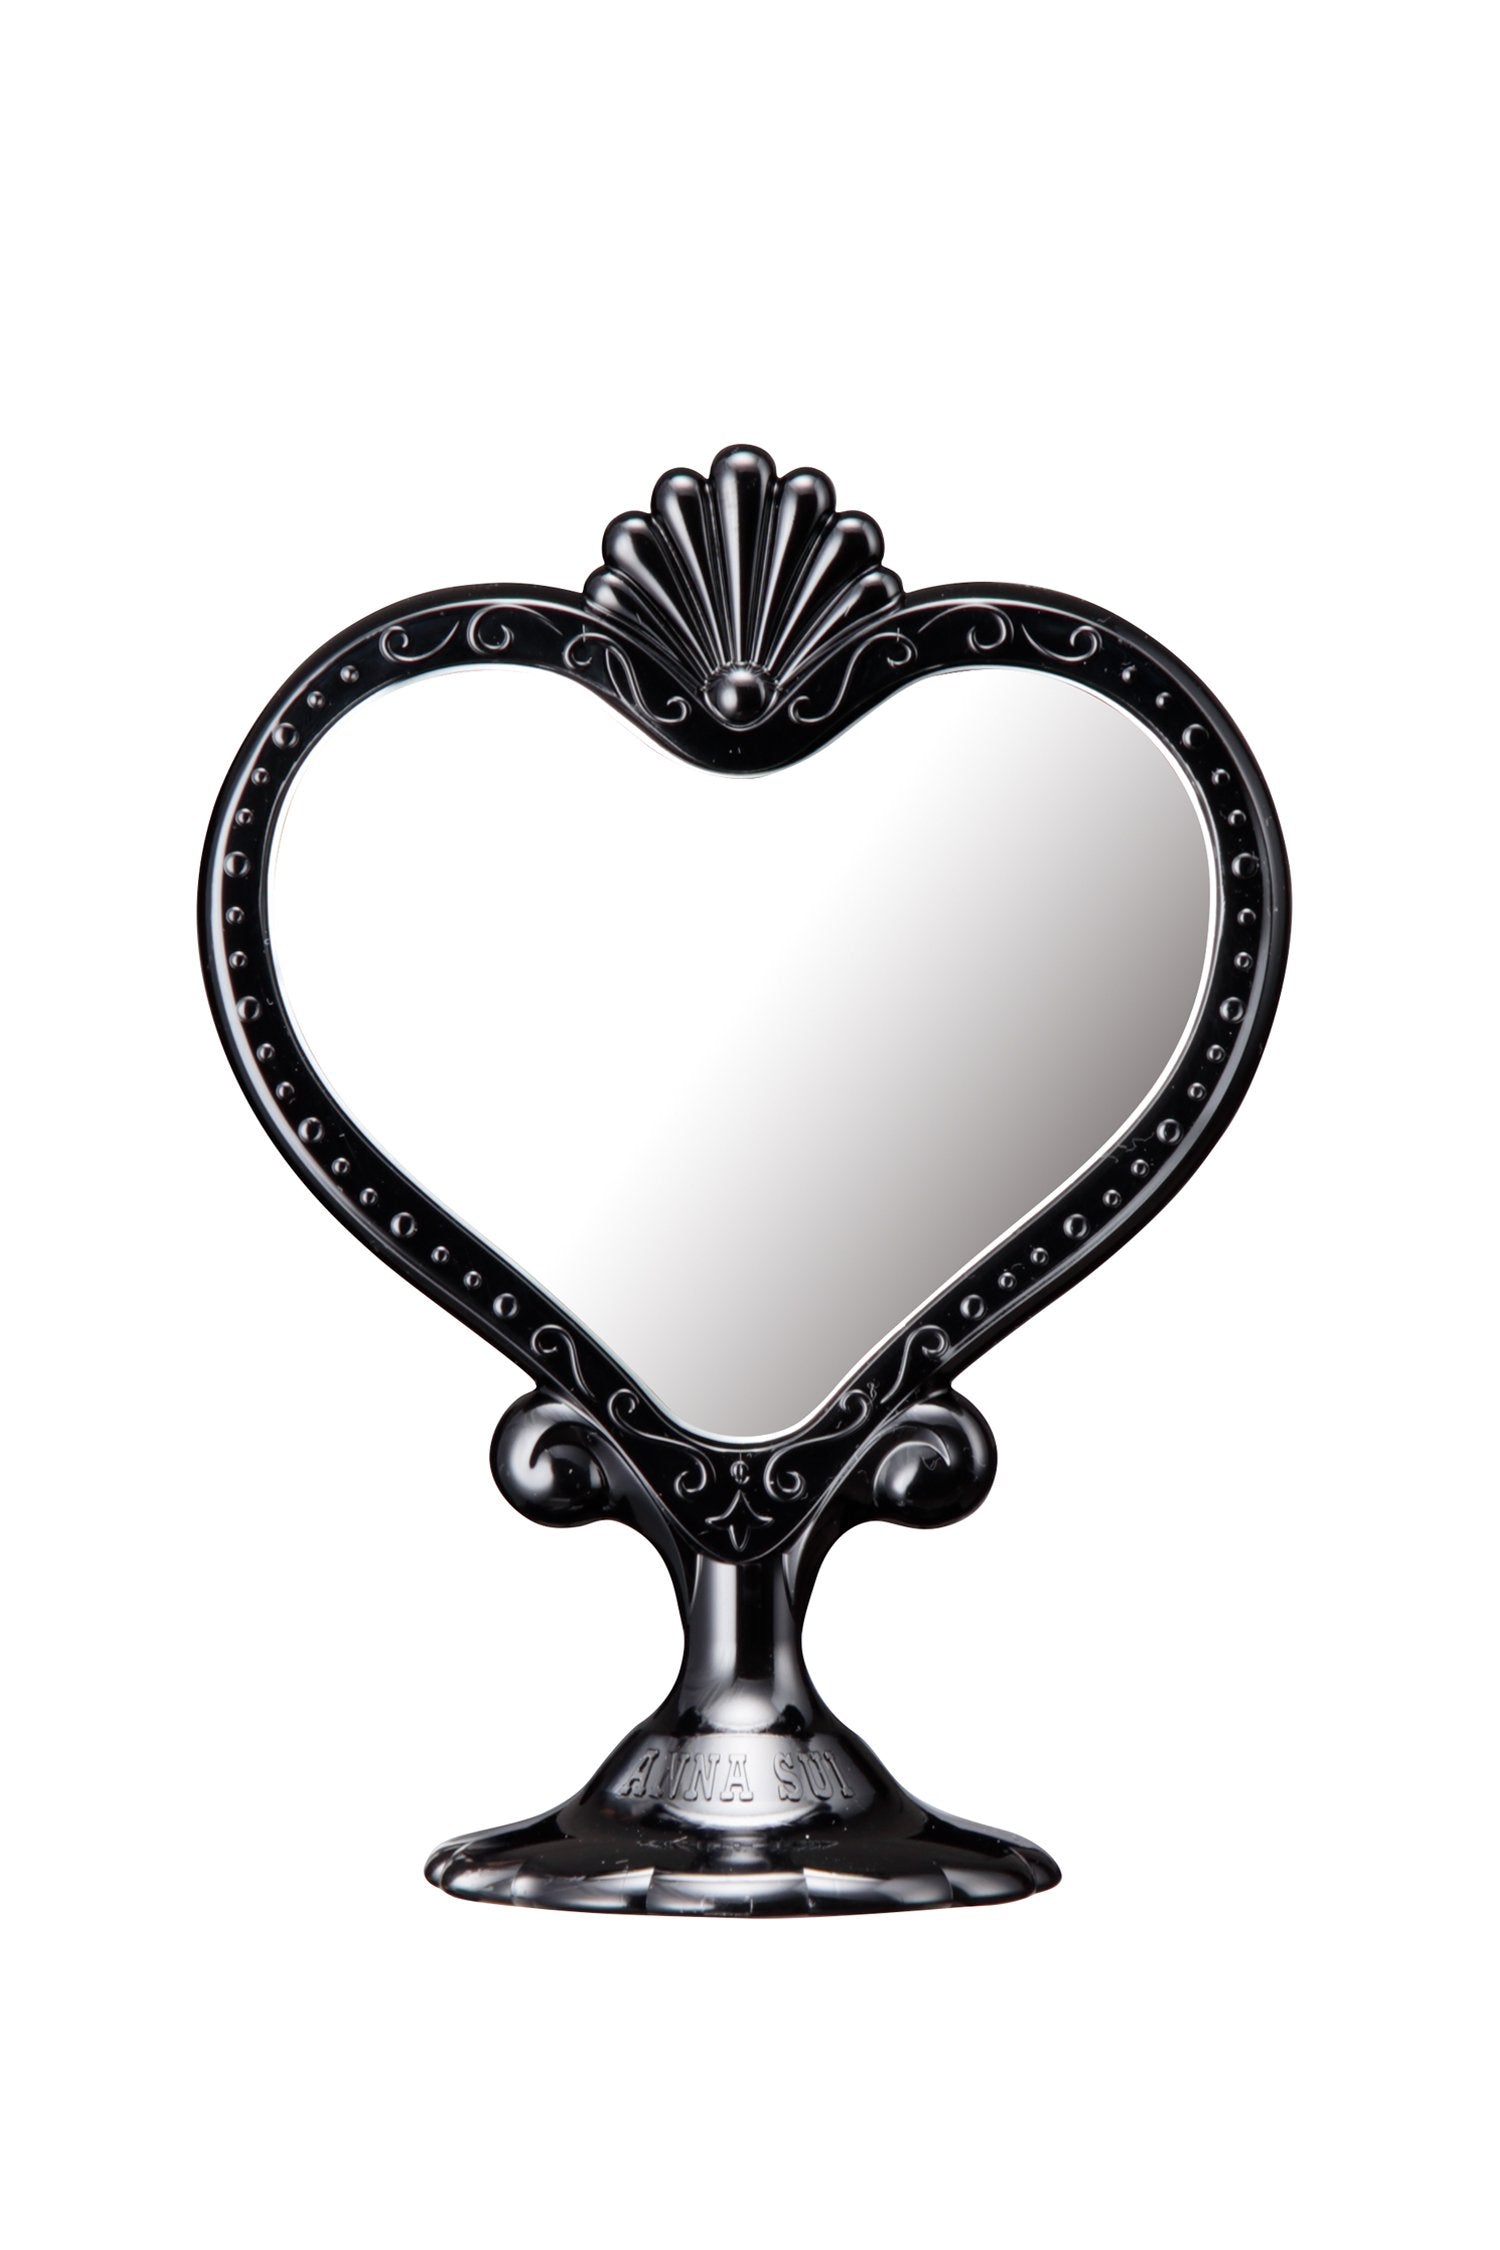 Specchio nero da appoggio in uno specchio a forma di cuore, su un supporto con marchio Anna